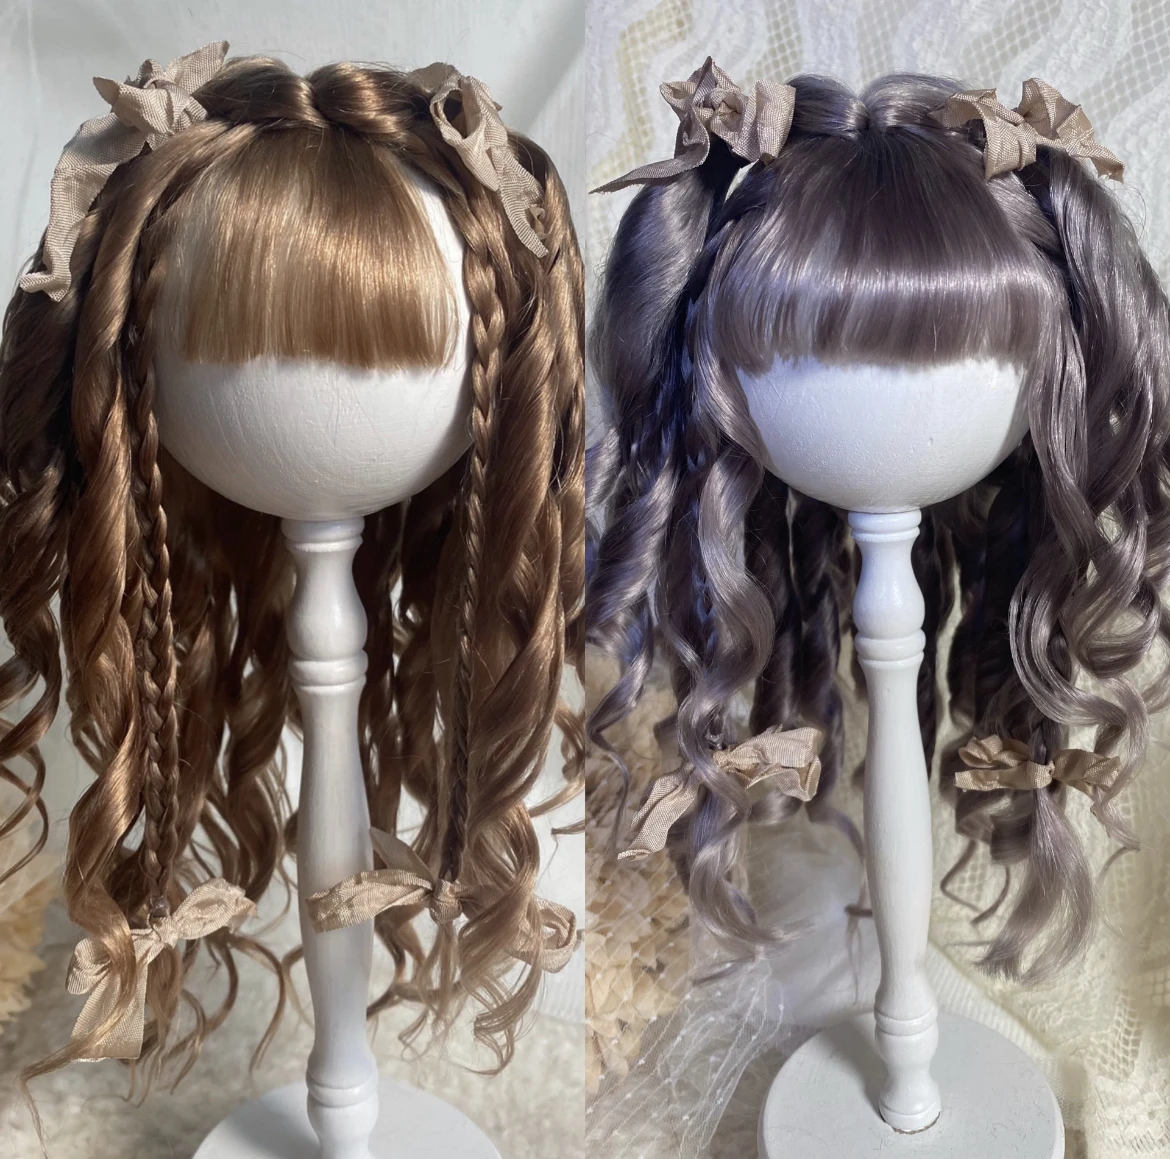 

Кукольные парики для Blythe Qbaby, мохеровые волнистые завитки, 9-10 дюймов, голова, обстоятельство, бесплатная доставка